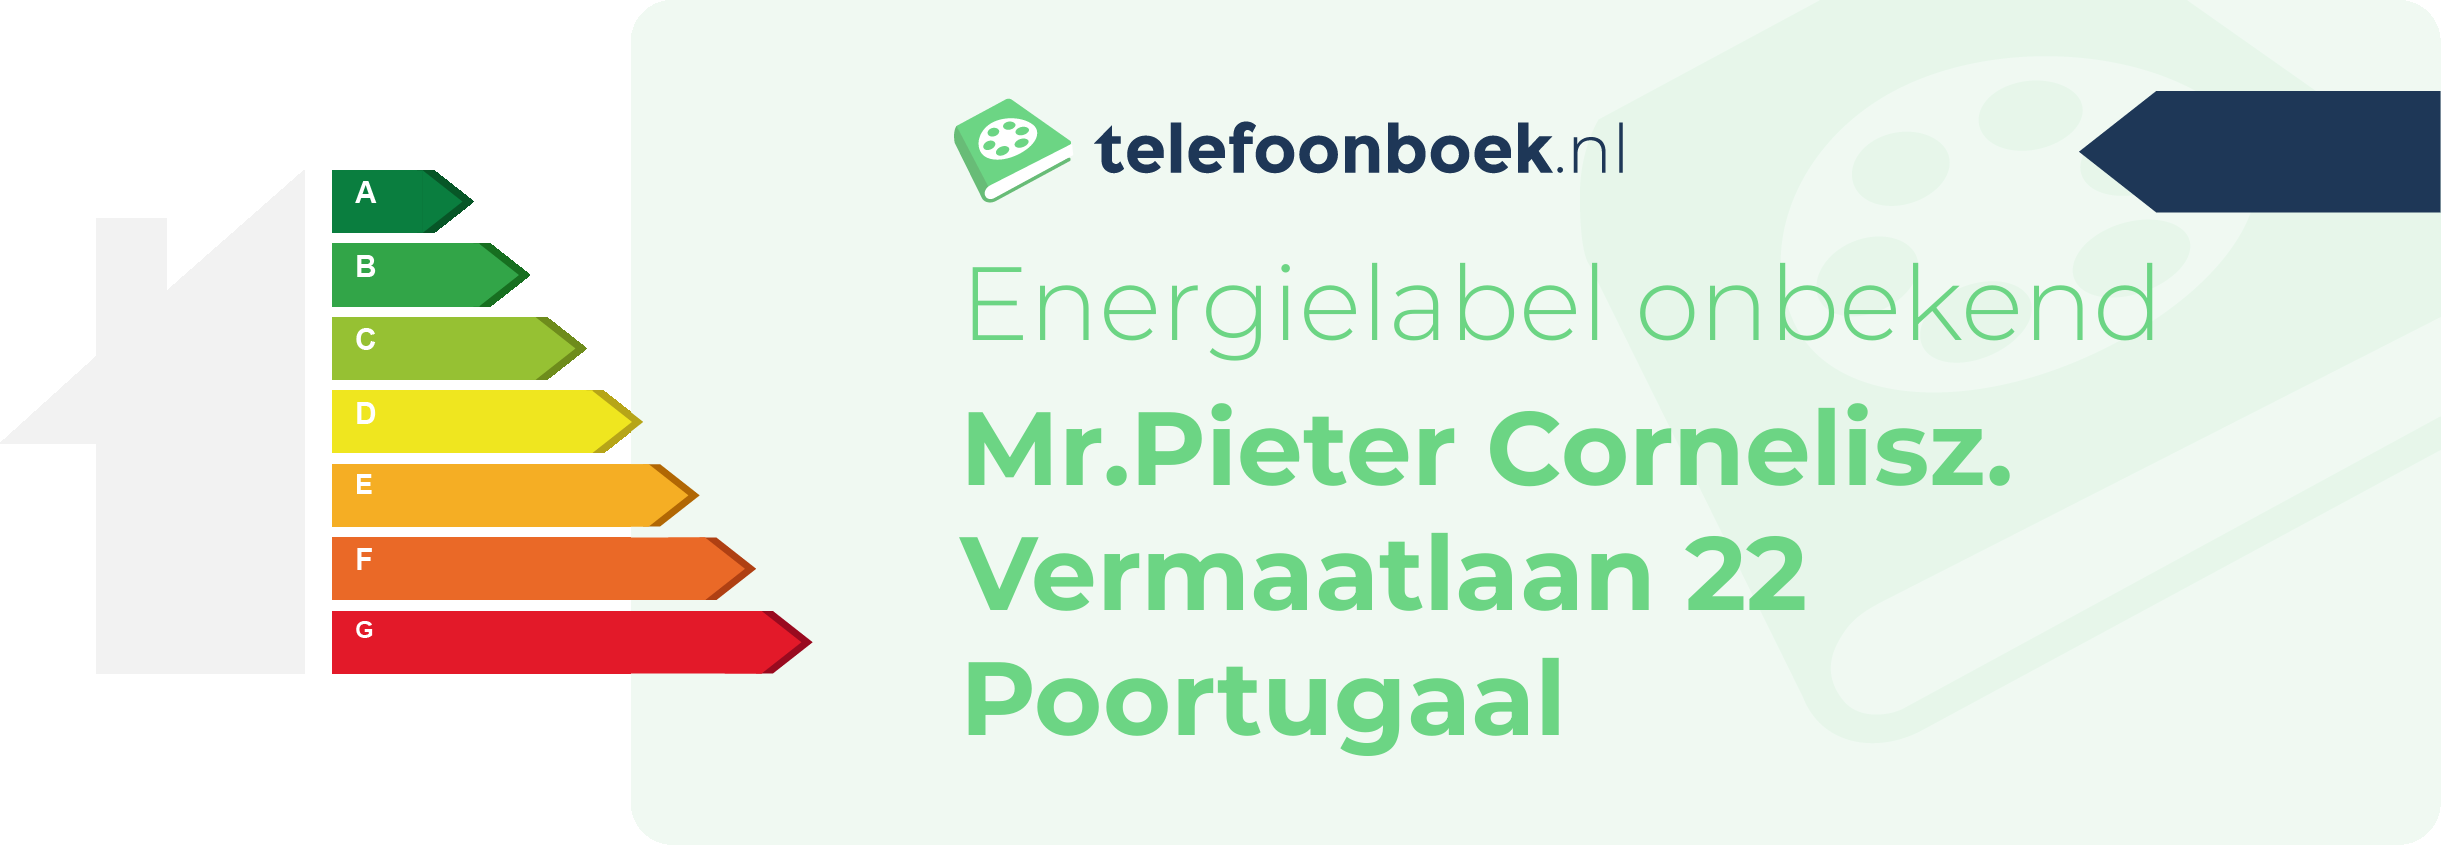 Energielabel Mr.Pieter Cornelisz. Vermaatlaan 22 Poortugaal